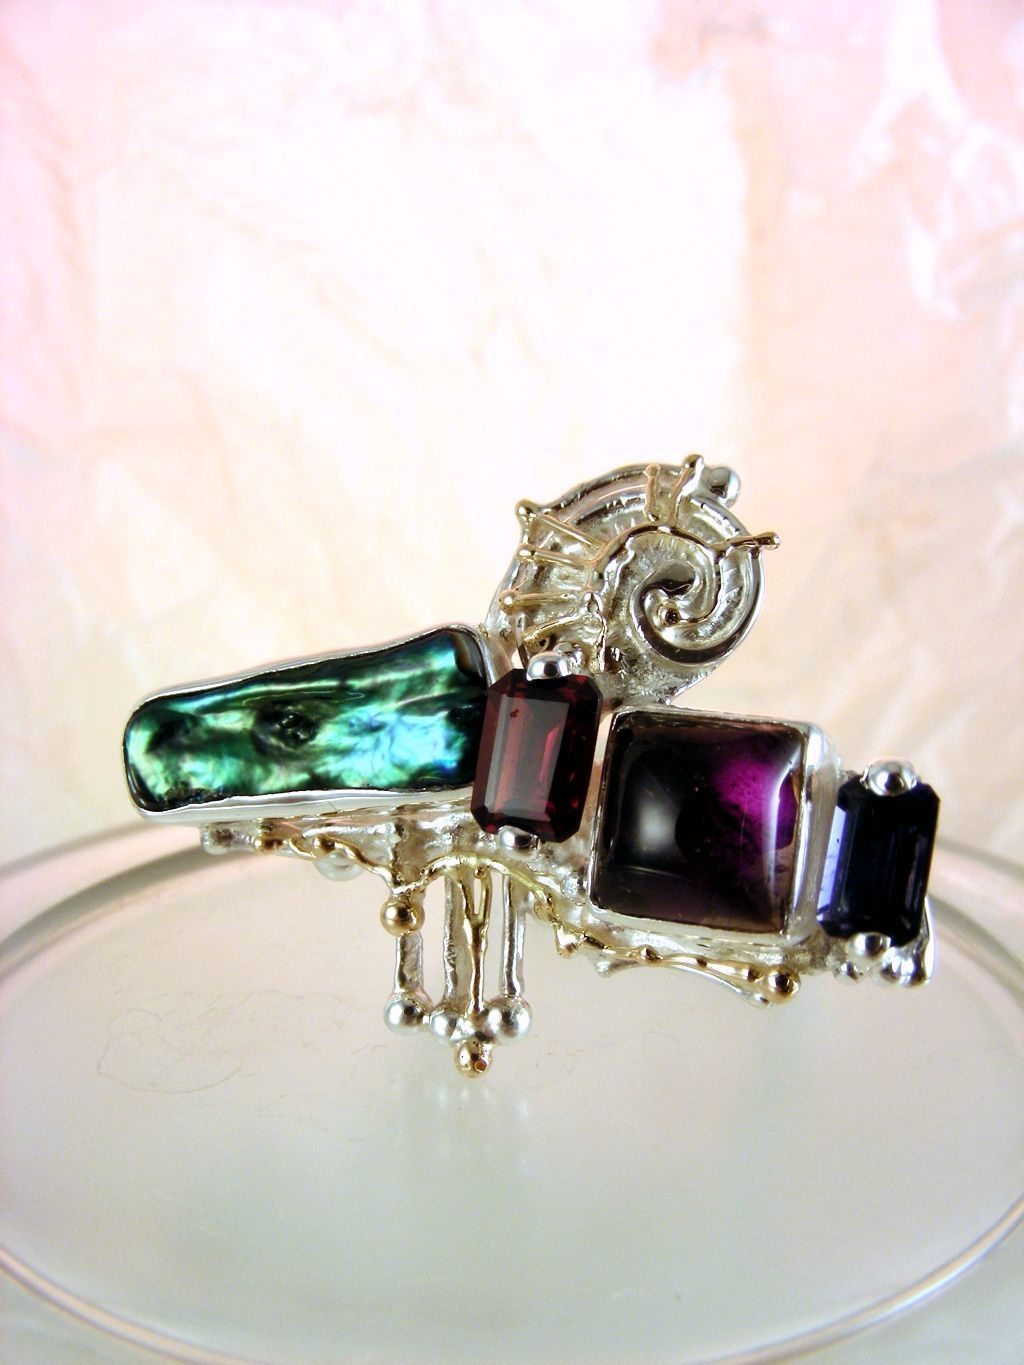 módní šperky, modní styl, sběratelská položka, šperky vyrobené ze stříbra a zlata, ručně vyráběný kvadrátový prstýnek s ametystem a perlou, ručně vyráběný kvadrátový prstýnek s ametystem a růžovým turmalínem, ručně vyráběný kvadrátový prstýnek s růžovým turmalínem a iolitem, ručně vyráběný kvadrátový prstýnek s ametystem a iolitem, Gregory Pyra Piro kvadrátový prstýnek čís. 7439